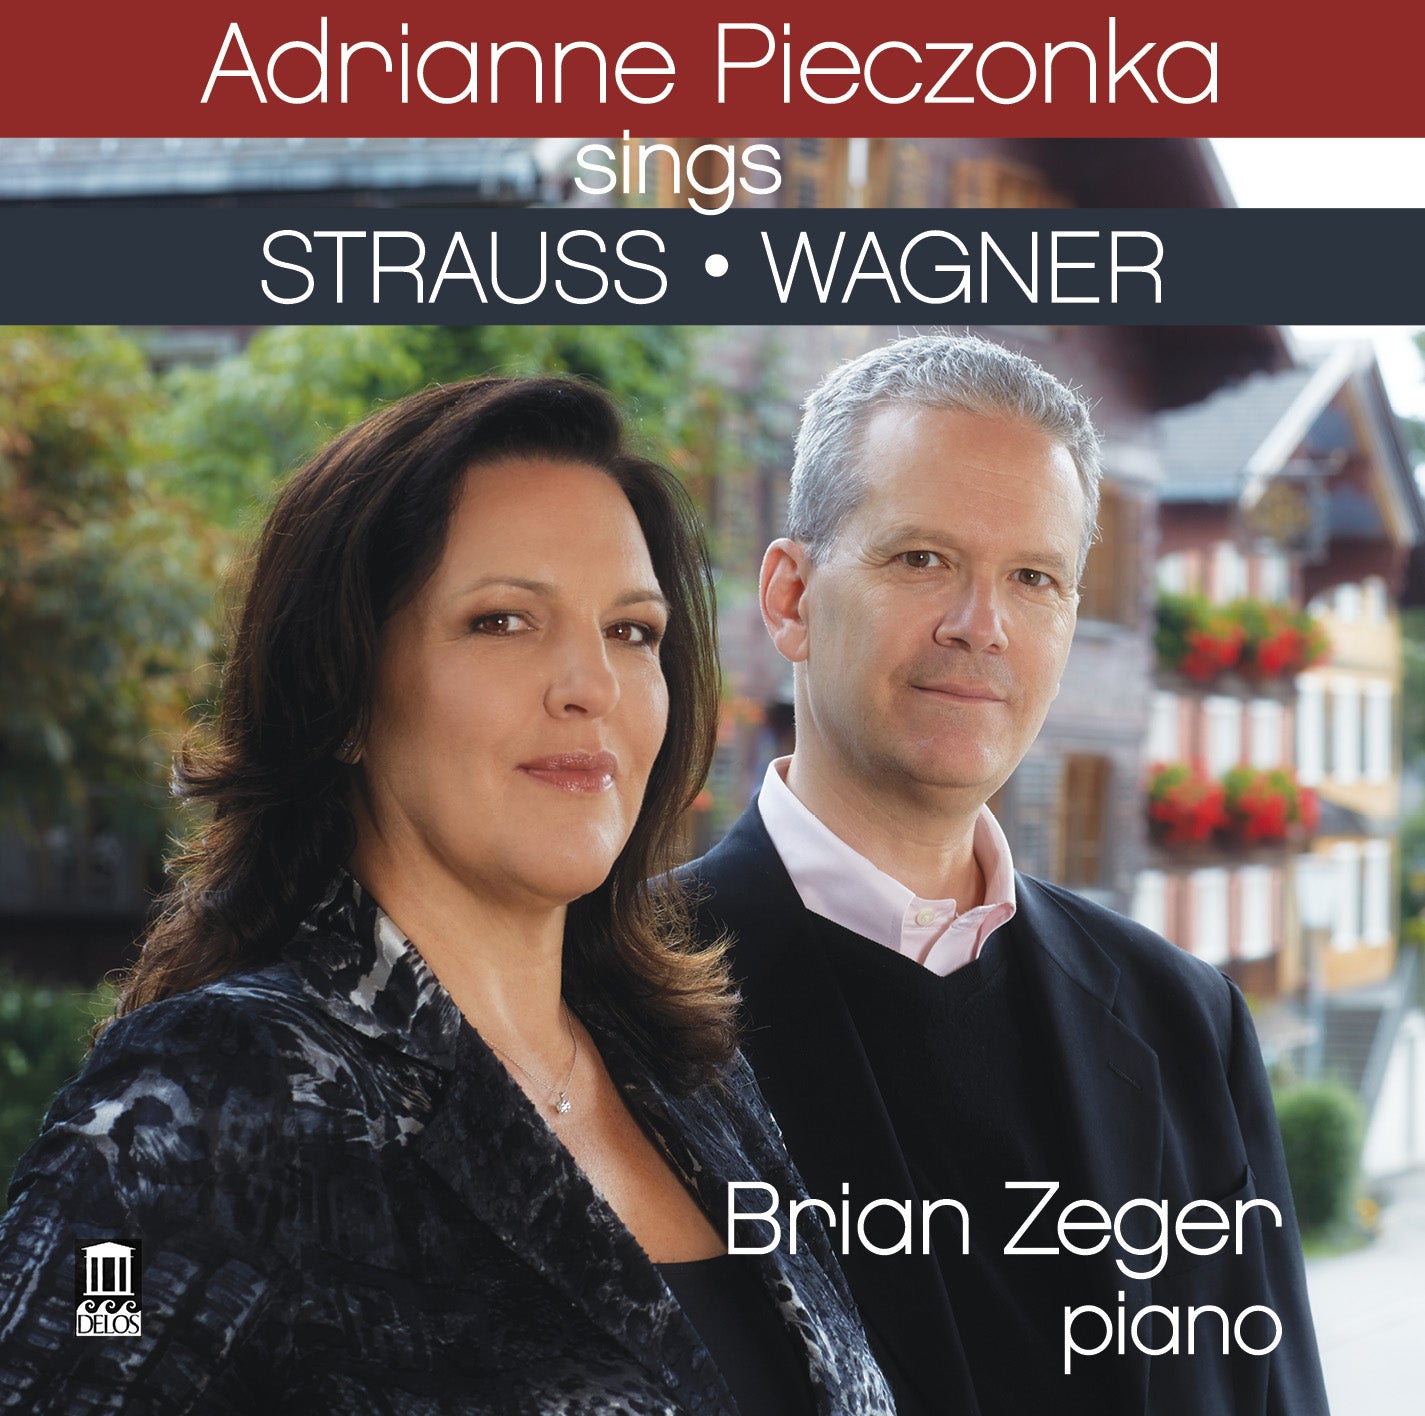 Adrianne Pieczonka Sings R. Strauss & Wagner / Adrianne Pieczonka; Brian Zeger